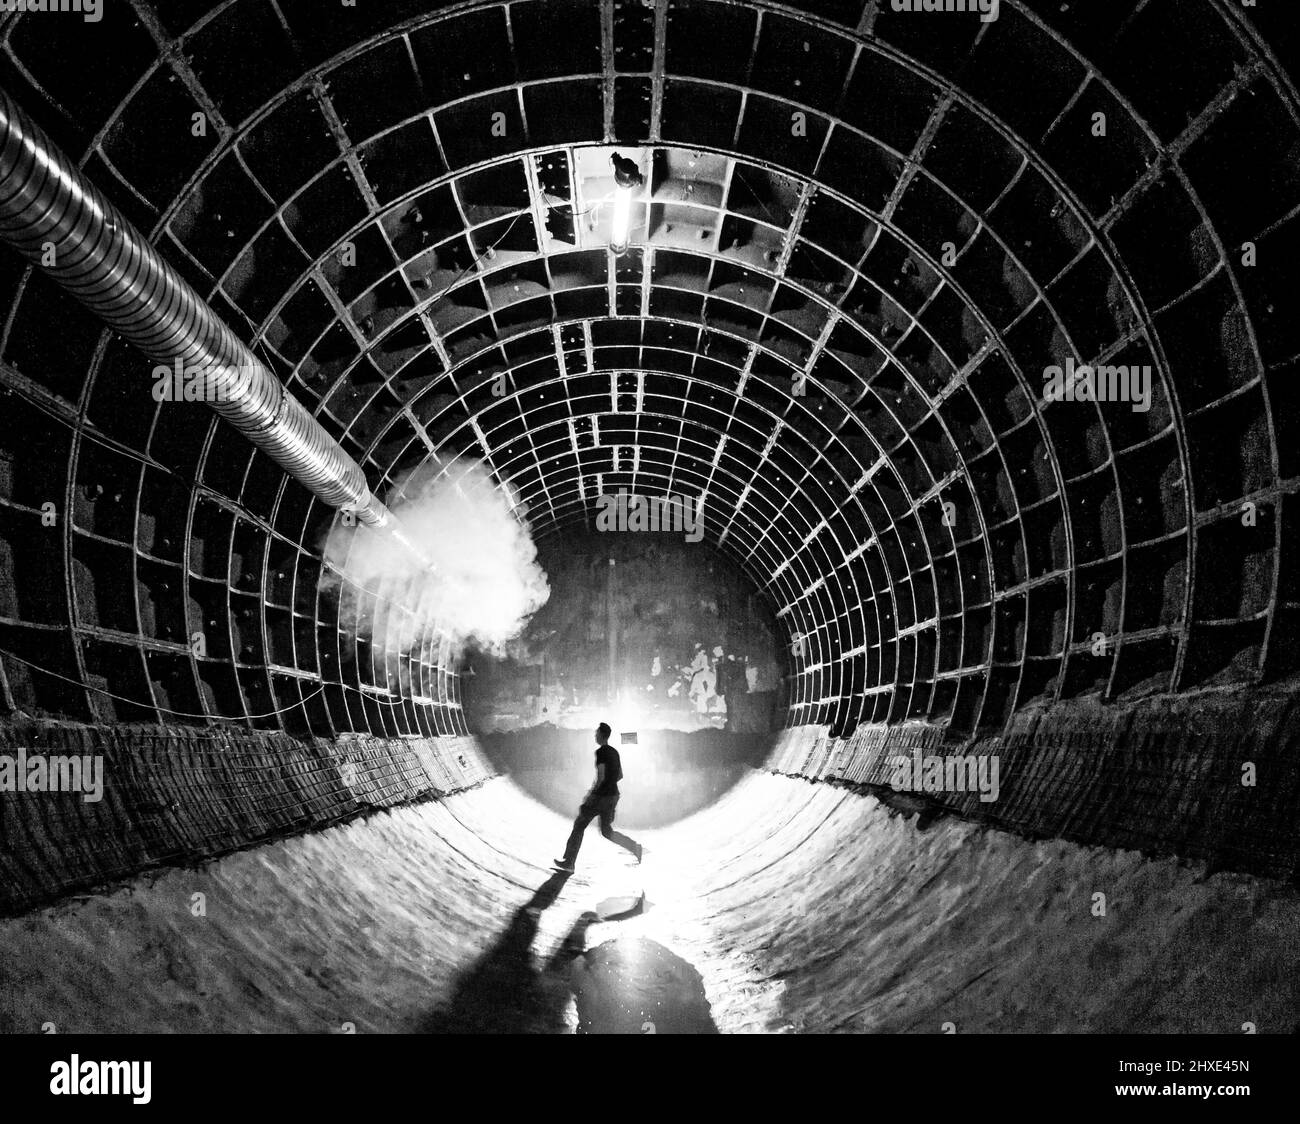 Tunnel dans le musée Bunker 703, Moscou, Russie. Concept- couverture de livre, claustrophobie, danger, post-nucléaire Banque D'Images